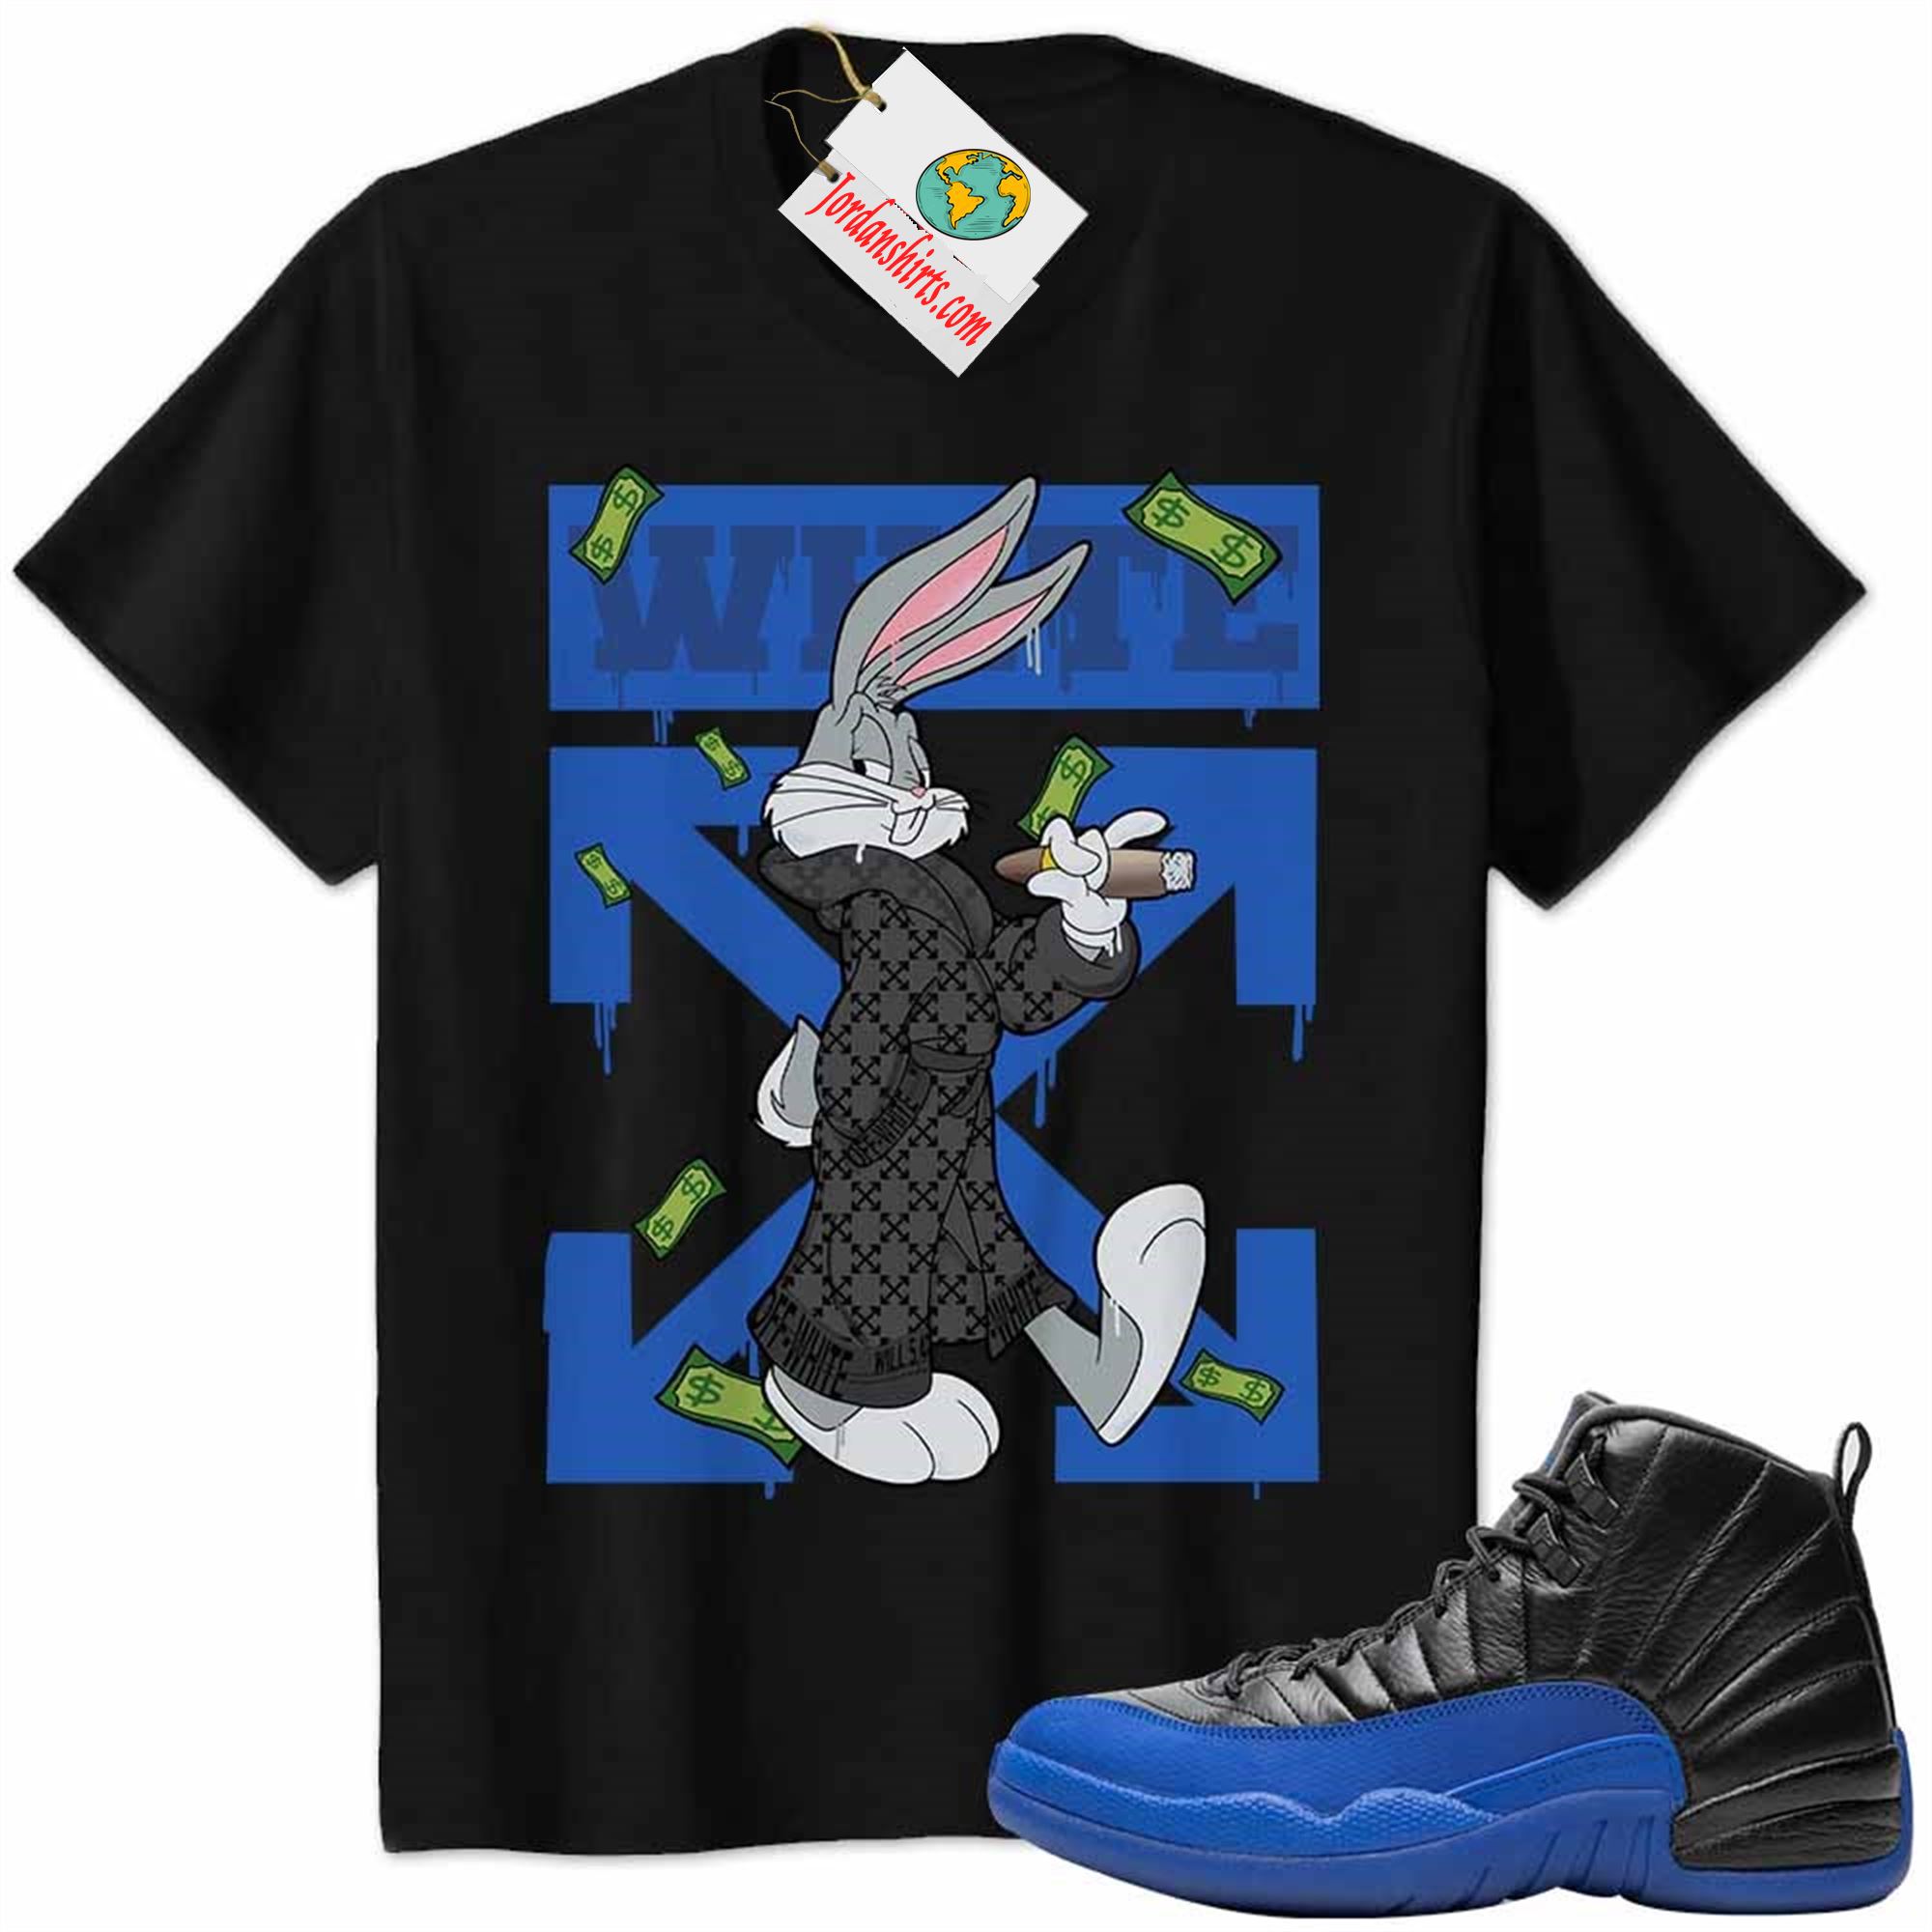 Jordan 12 Shirt, Jordan 12 Game Royal Shirt Bug Bunny Smokes Weed Money Falling Black Plus Size Up To 5xl